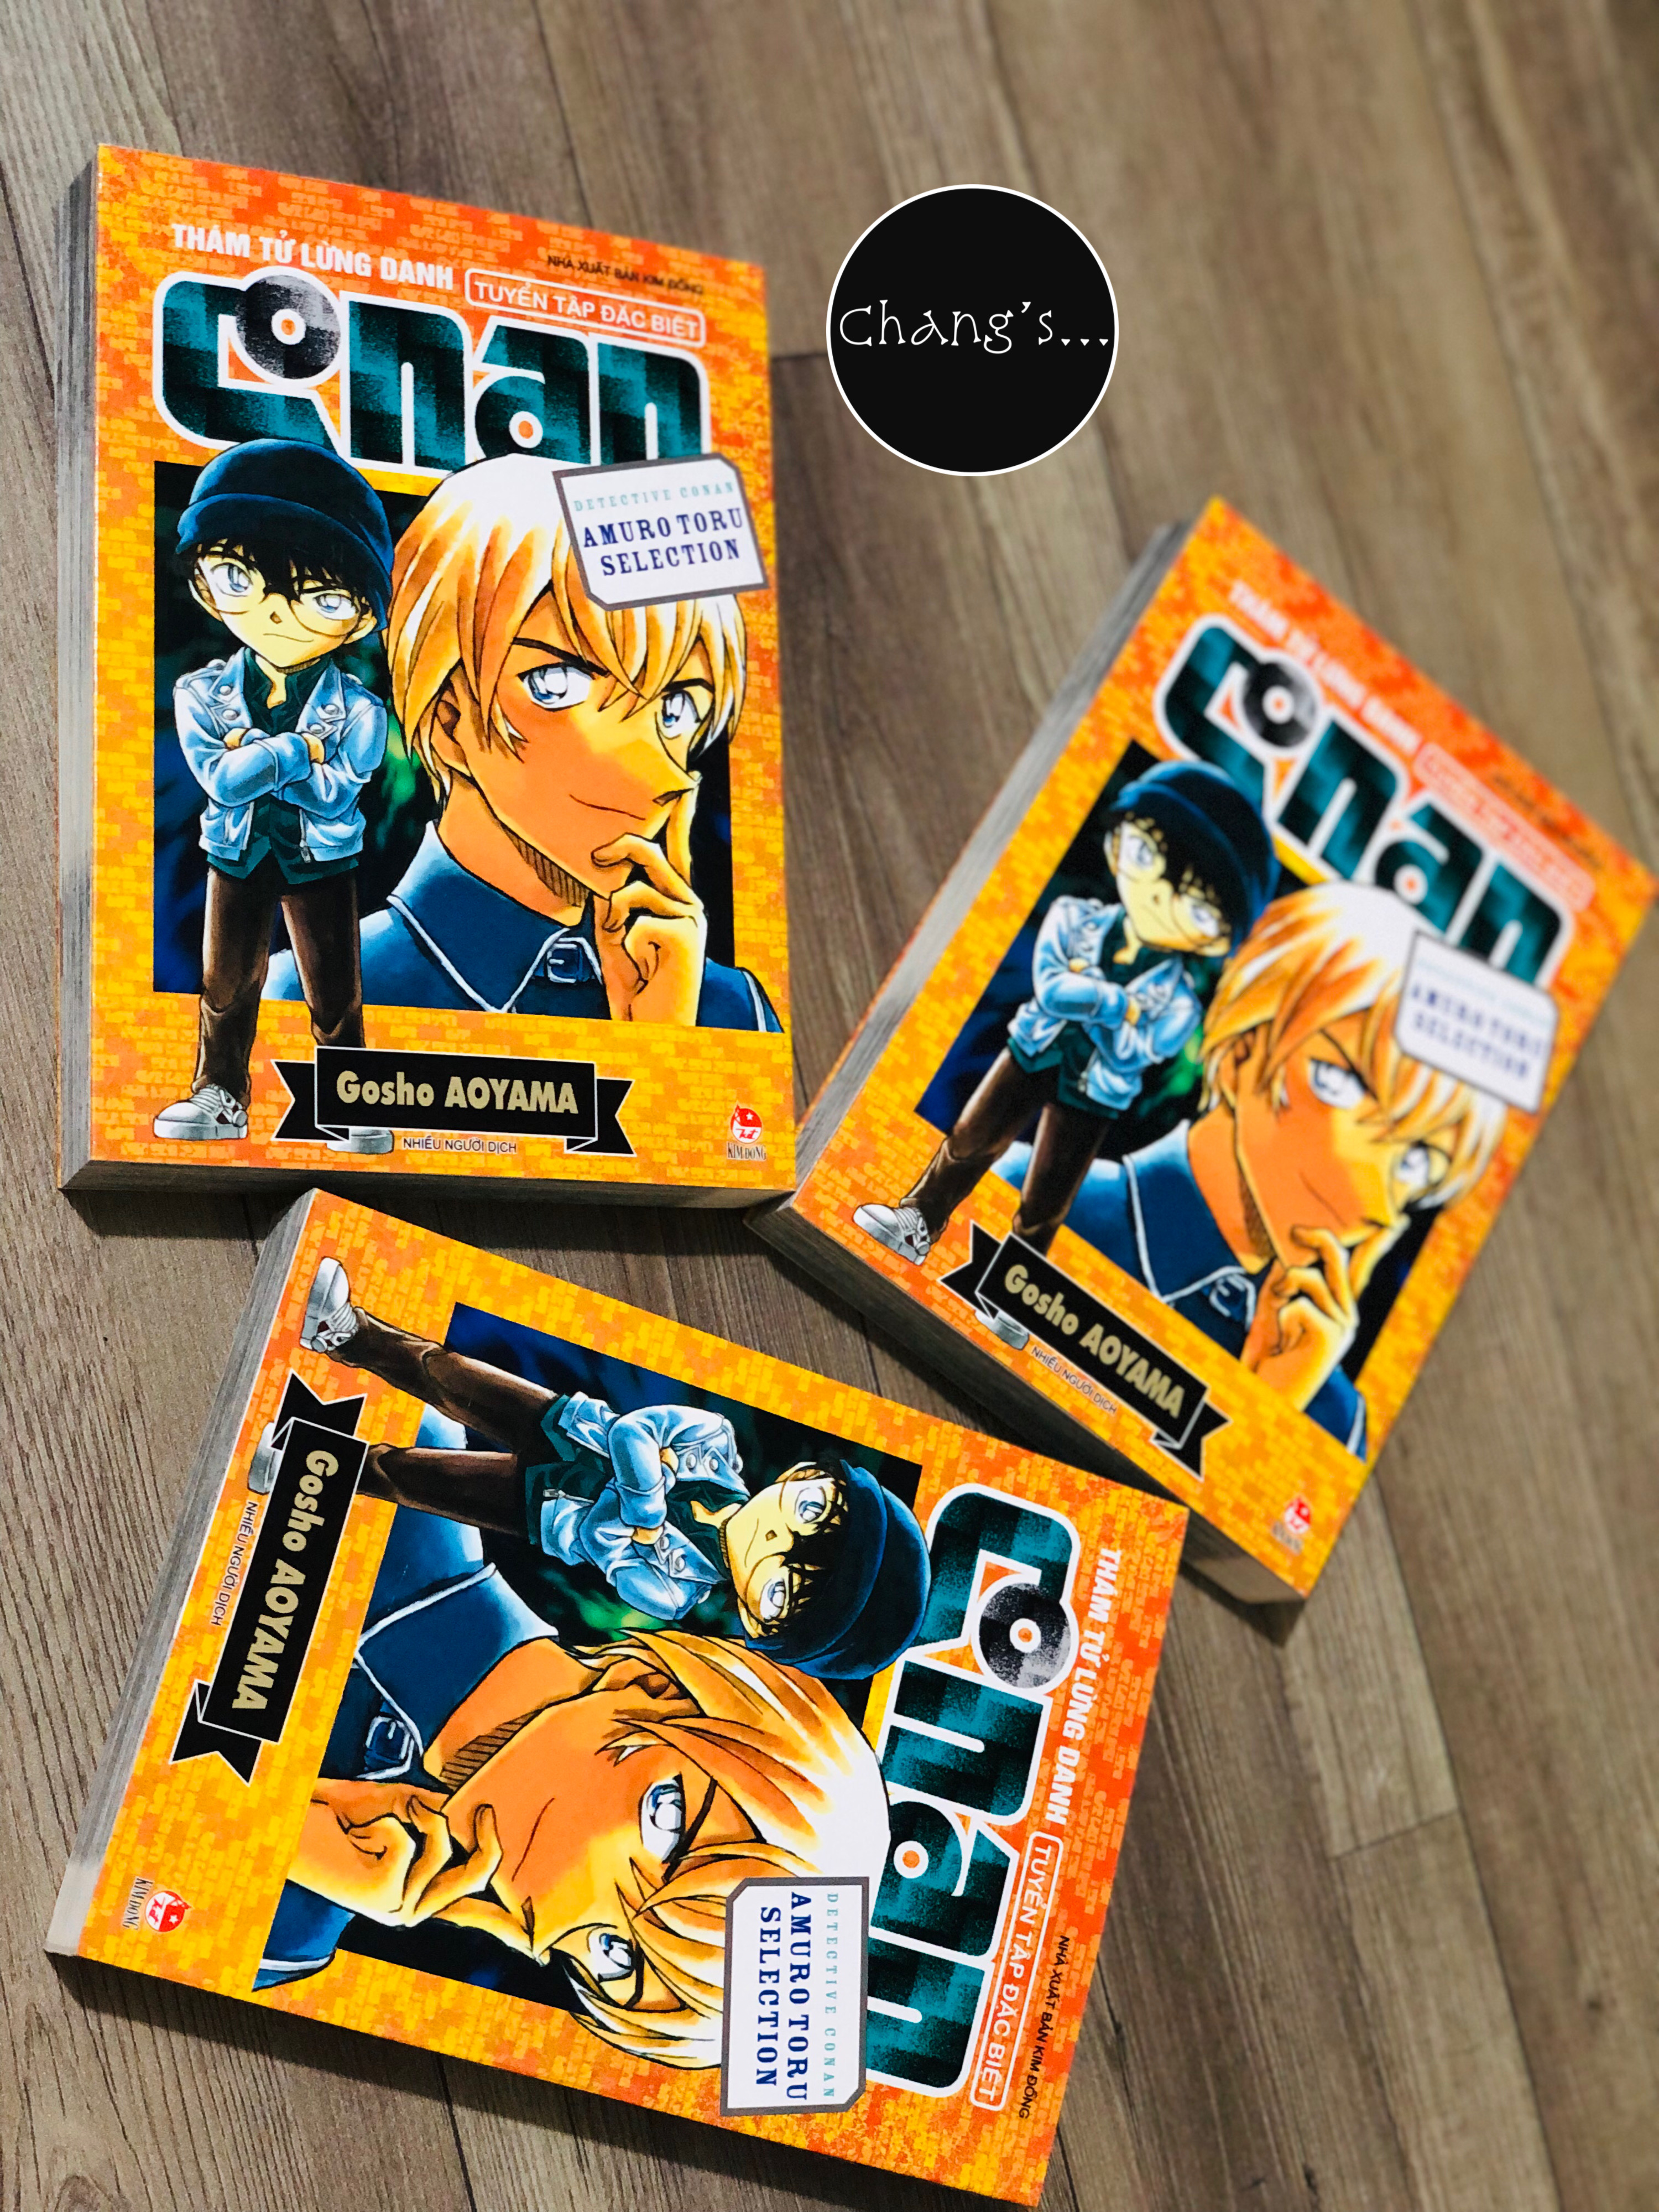 Thám tử lừng danh Conan - Tuyển tập đặc biệt: Amuro Toru Selection